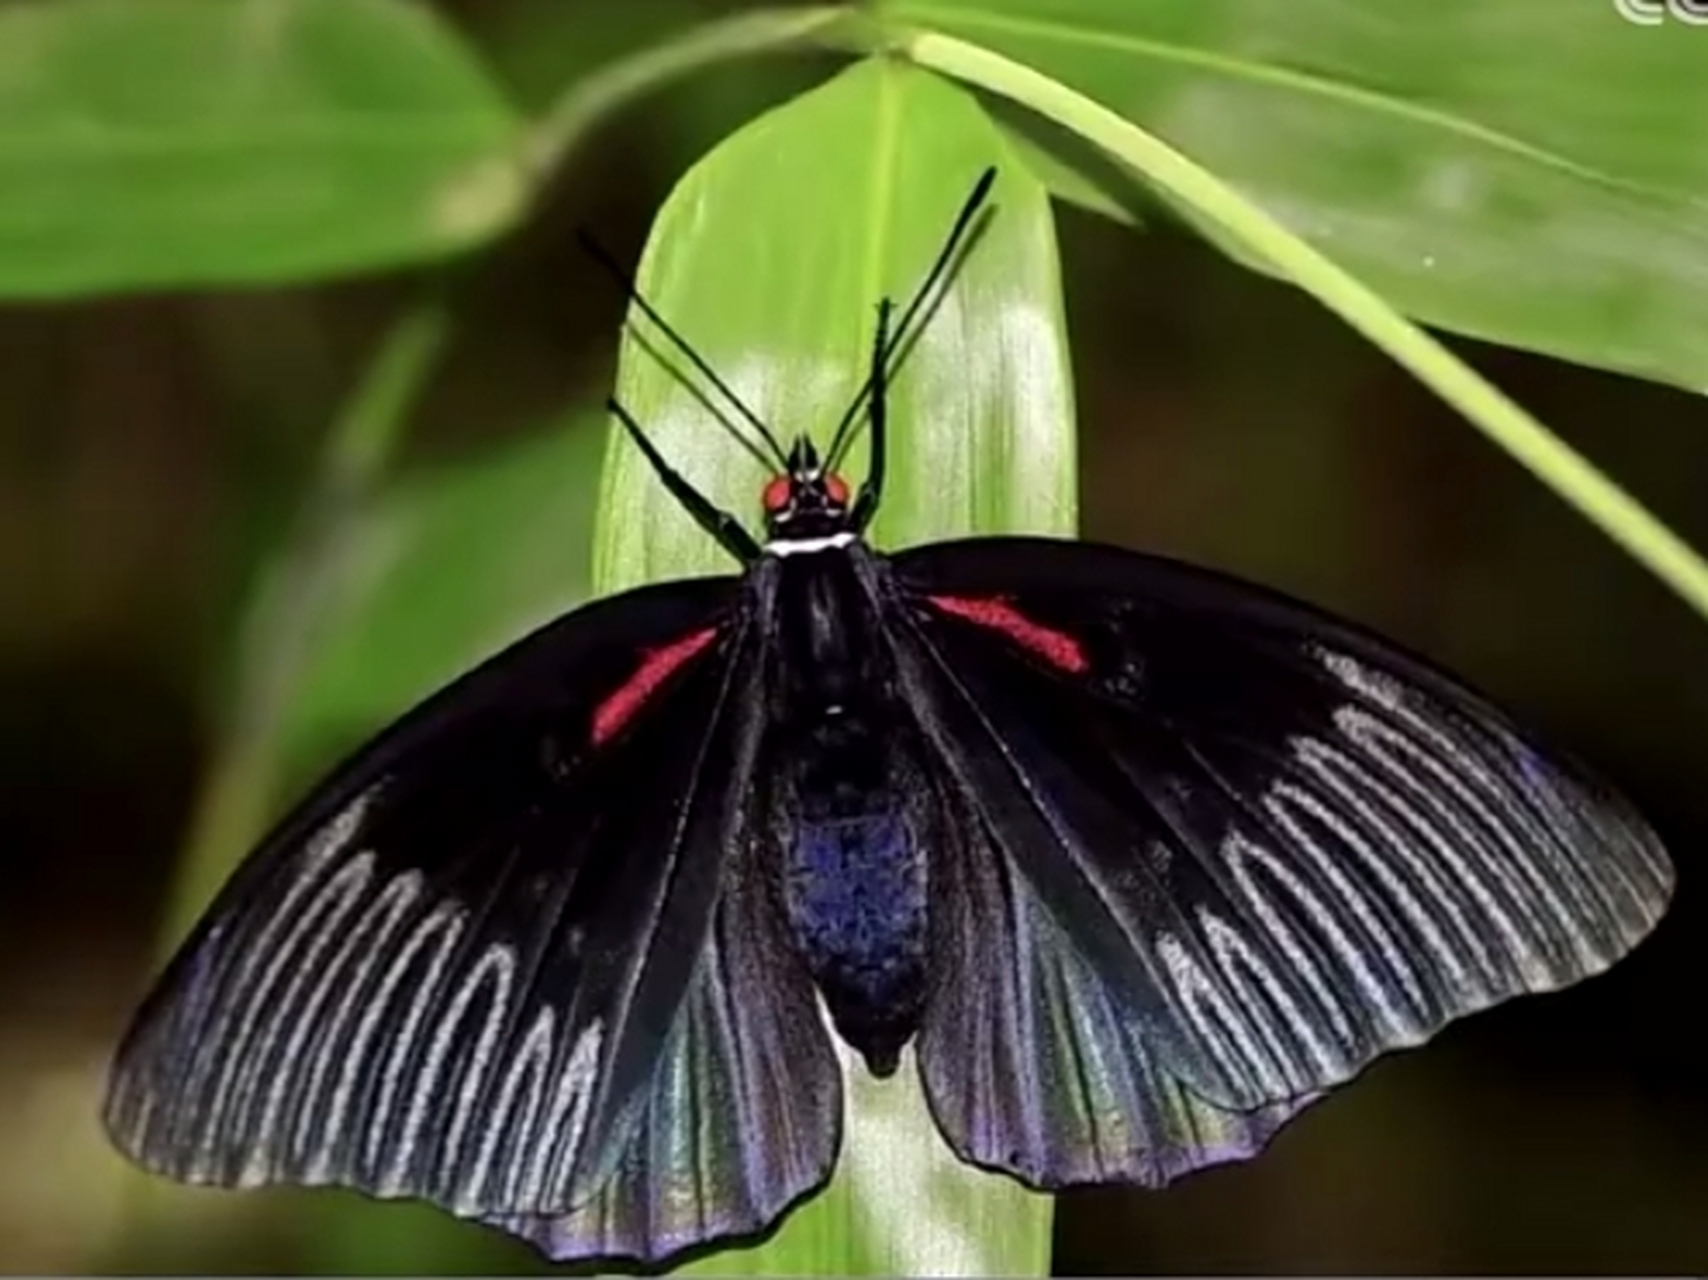 中国蝴蝶种类图片